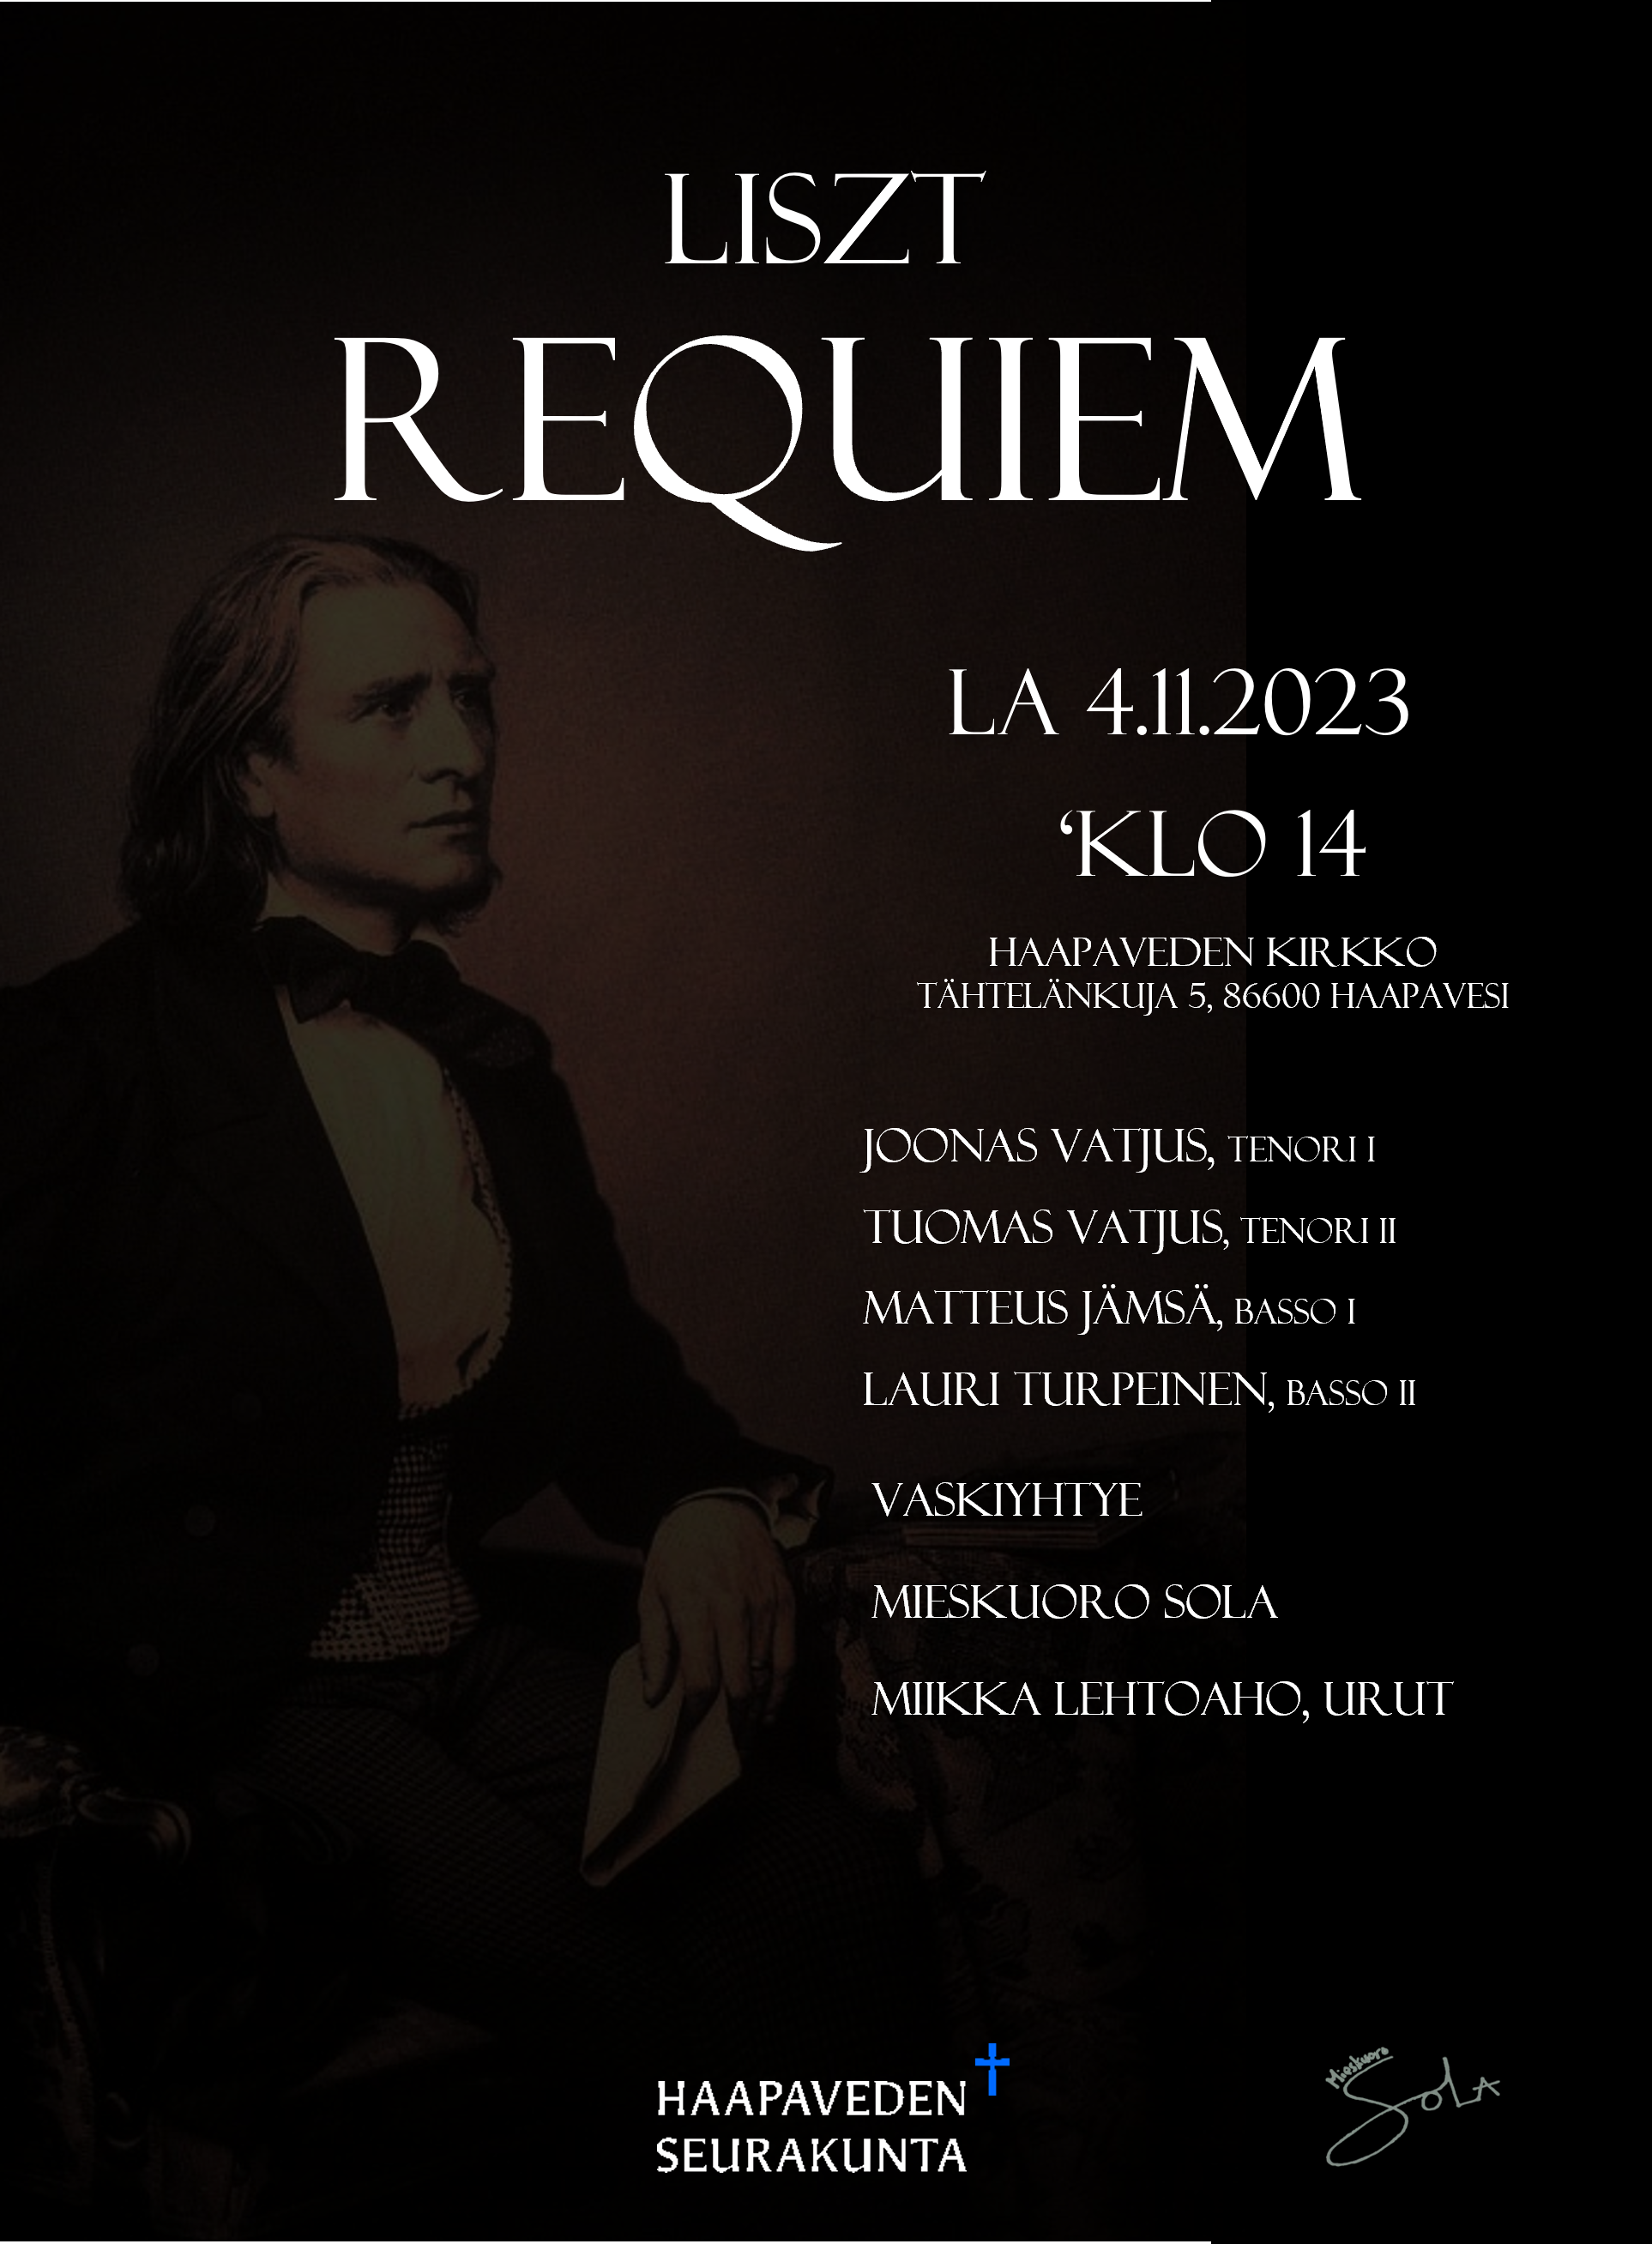 Liszt Requiem 4.11.2023.png